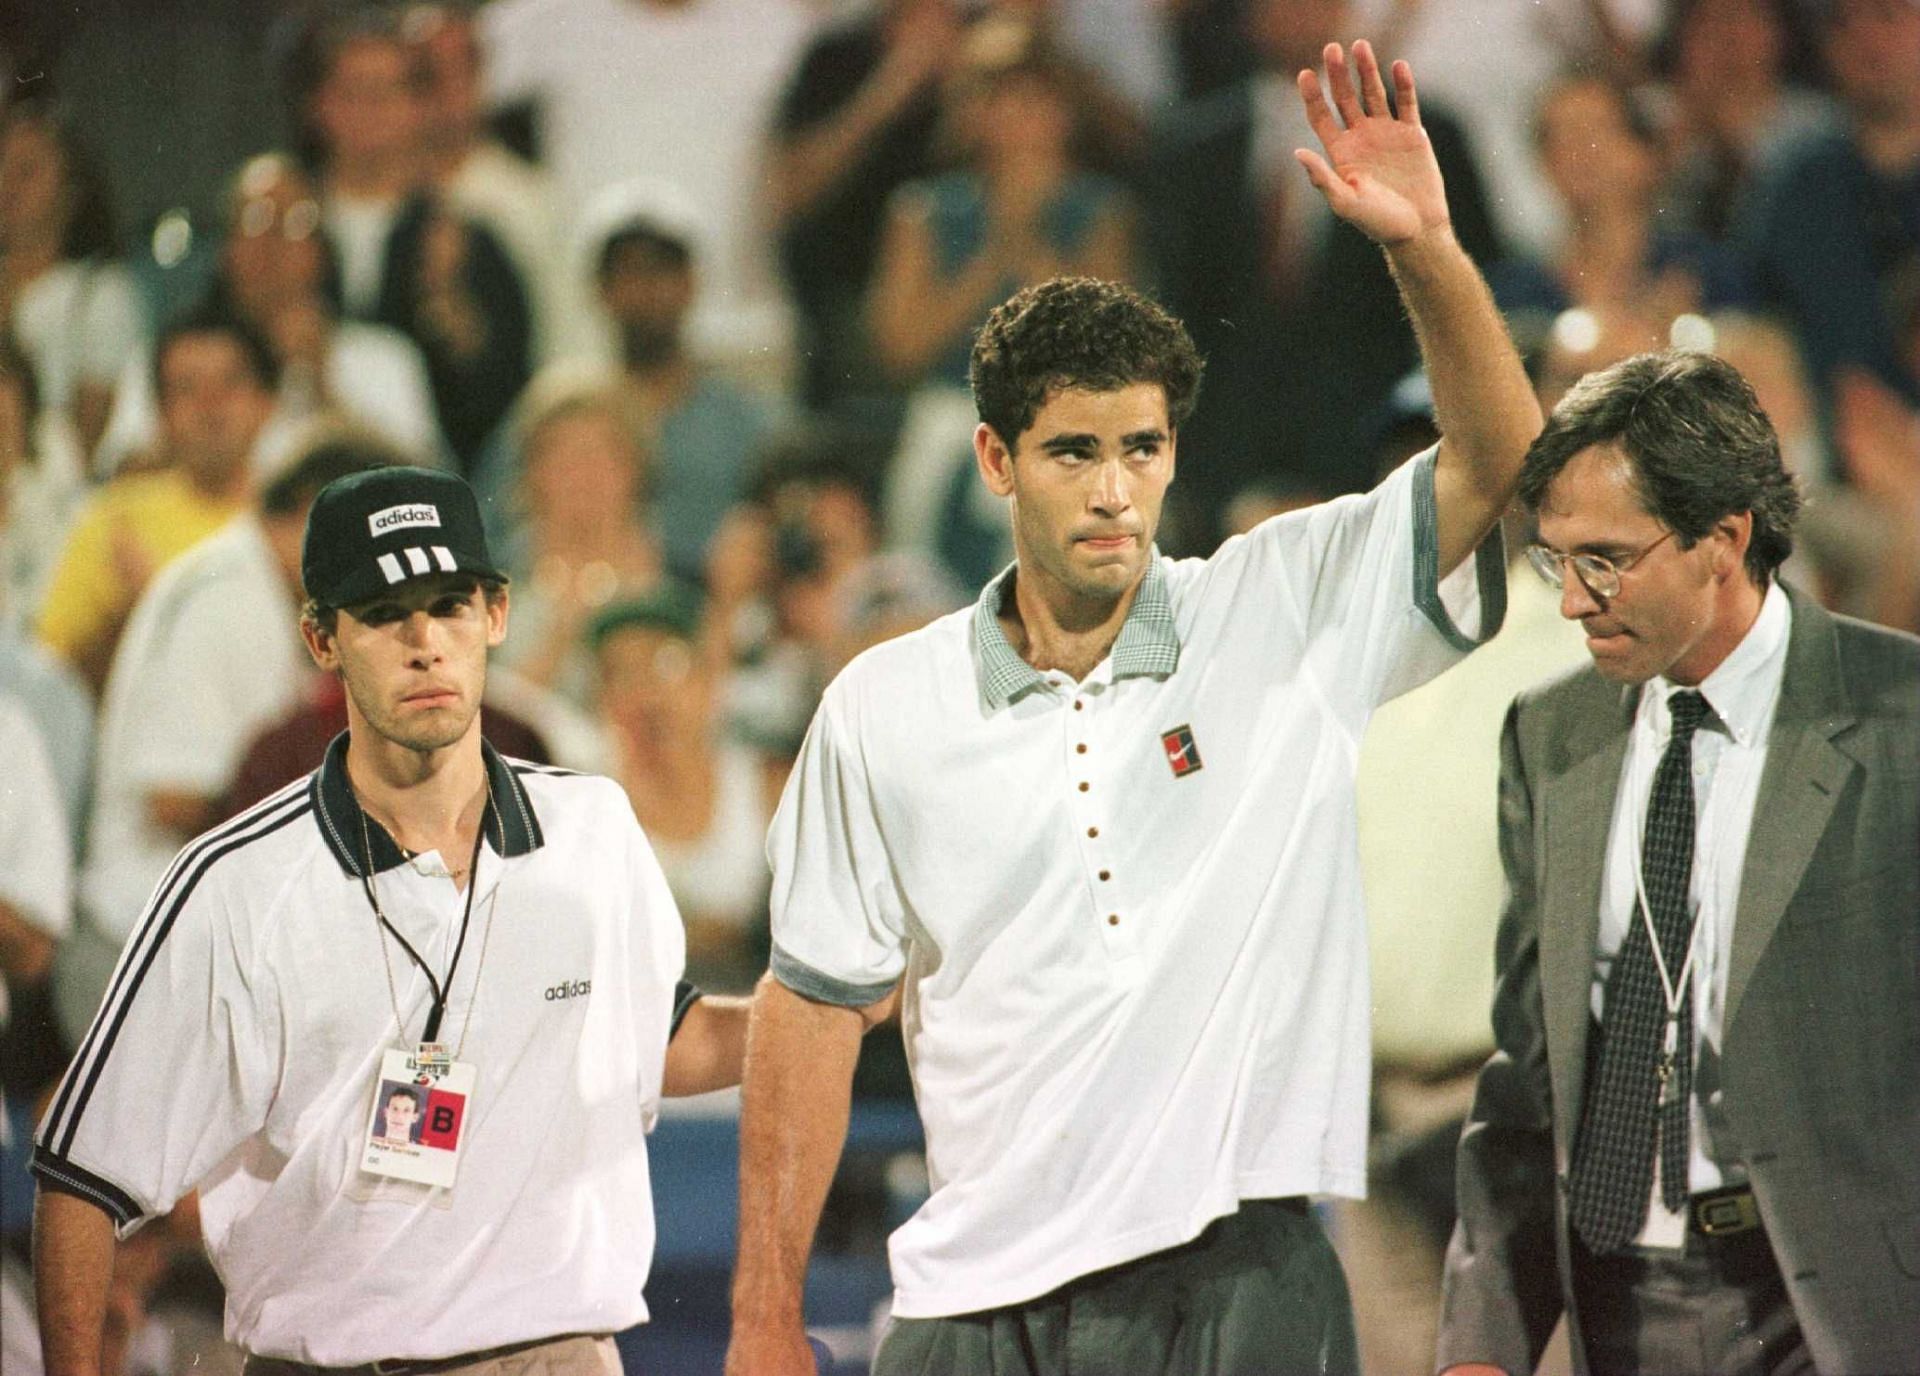 Pete Sampras after winning the 1996 US Open.